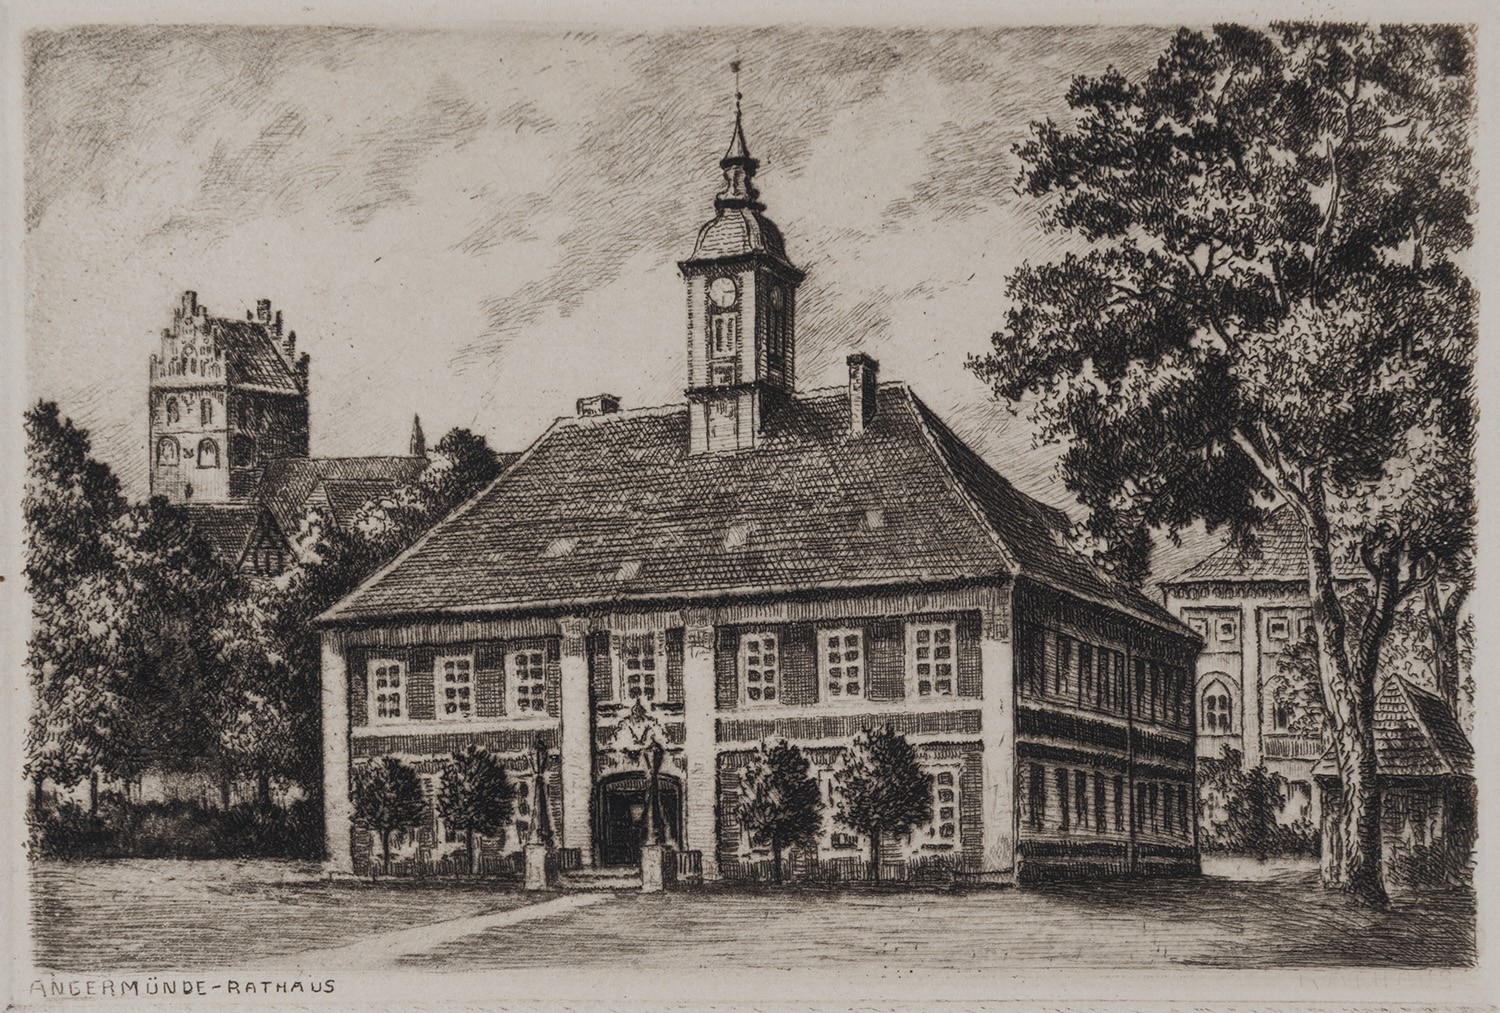 Angermünde: Rathaus (Landesgeschichtliche Vereinigung für die Mark Brandenburg e.V., Archiv CC BY)